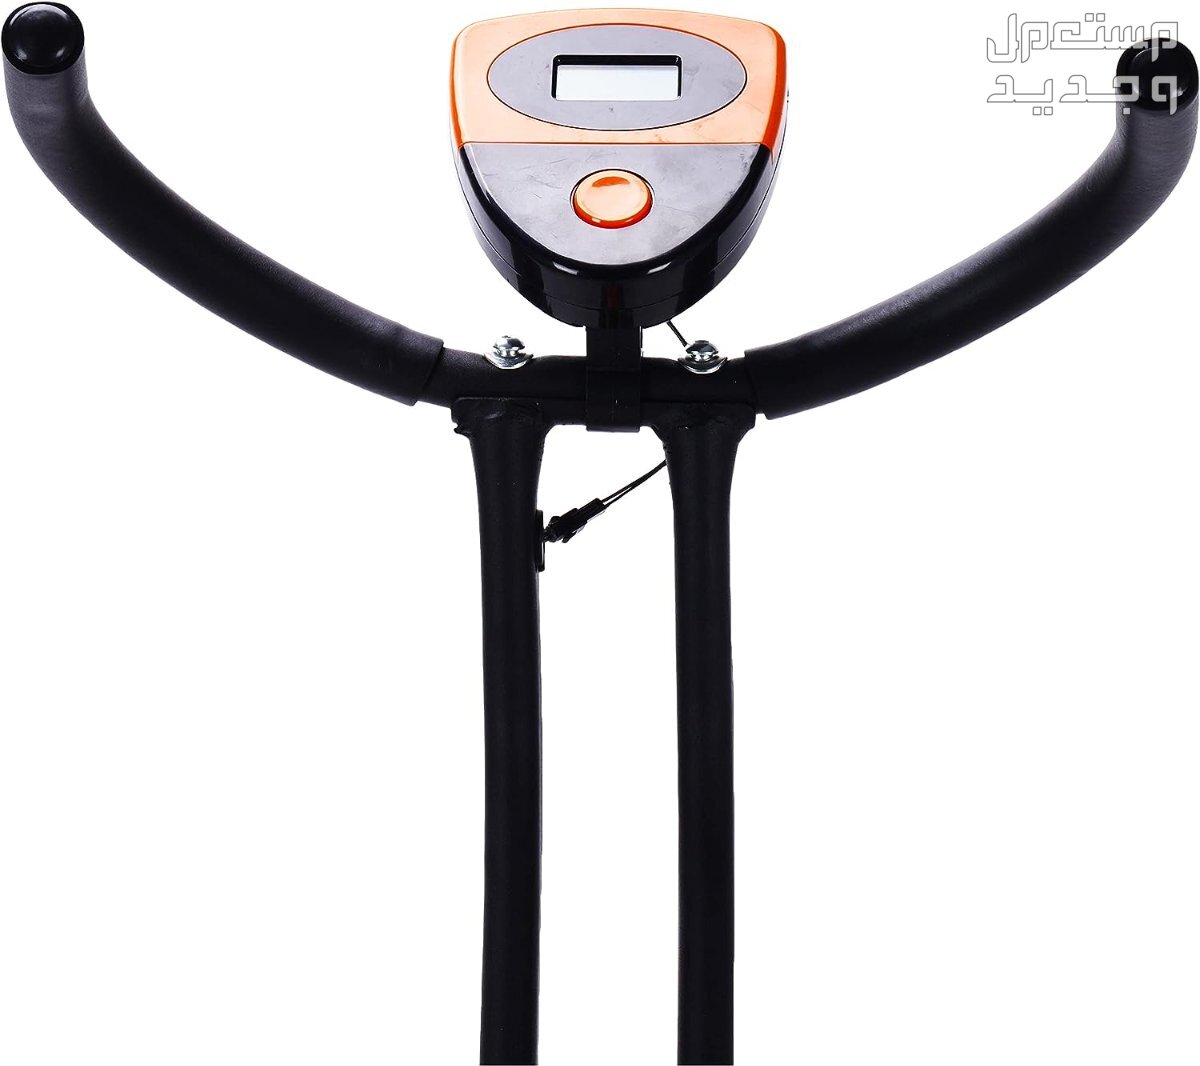 ارخص اجهزة رياضية مستعملة بالمواصفات والصور والاسعار في عمان جهاز ‎دراجة كارديو ‎بودي بيلدر موديل ‎38-1112-Orange